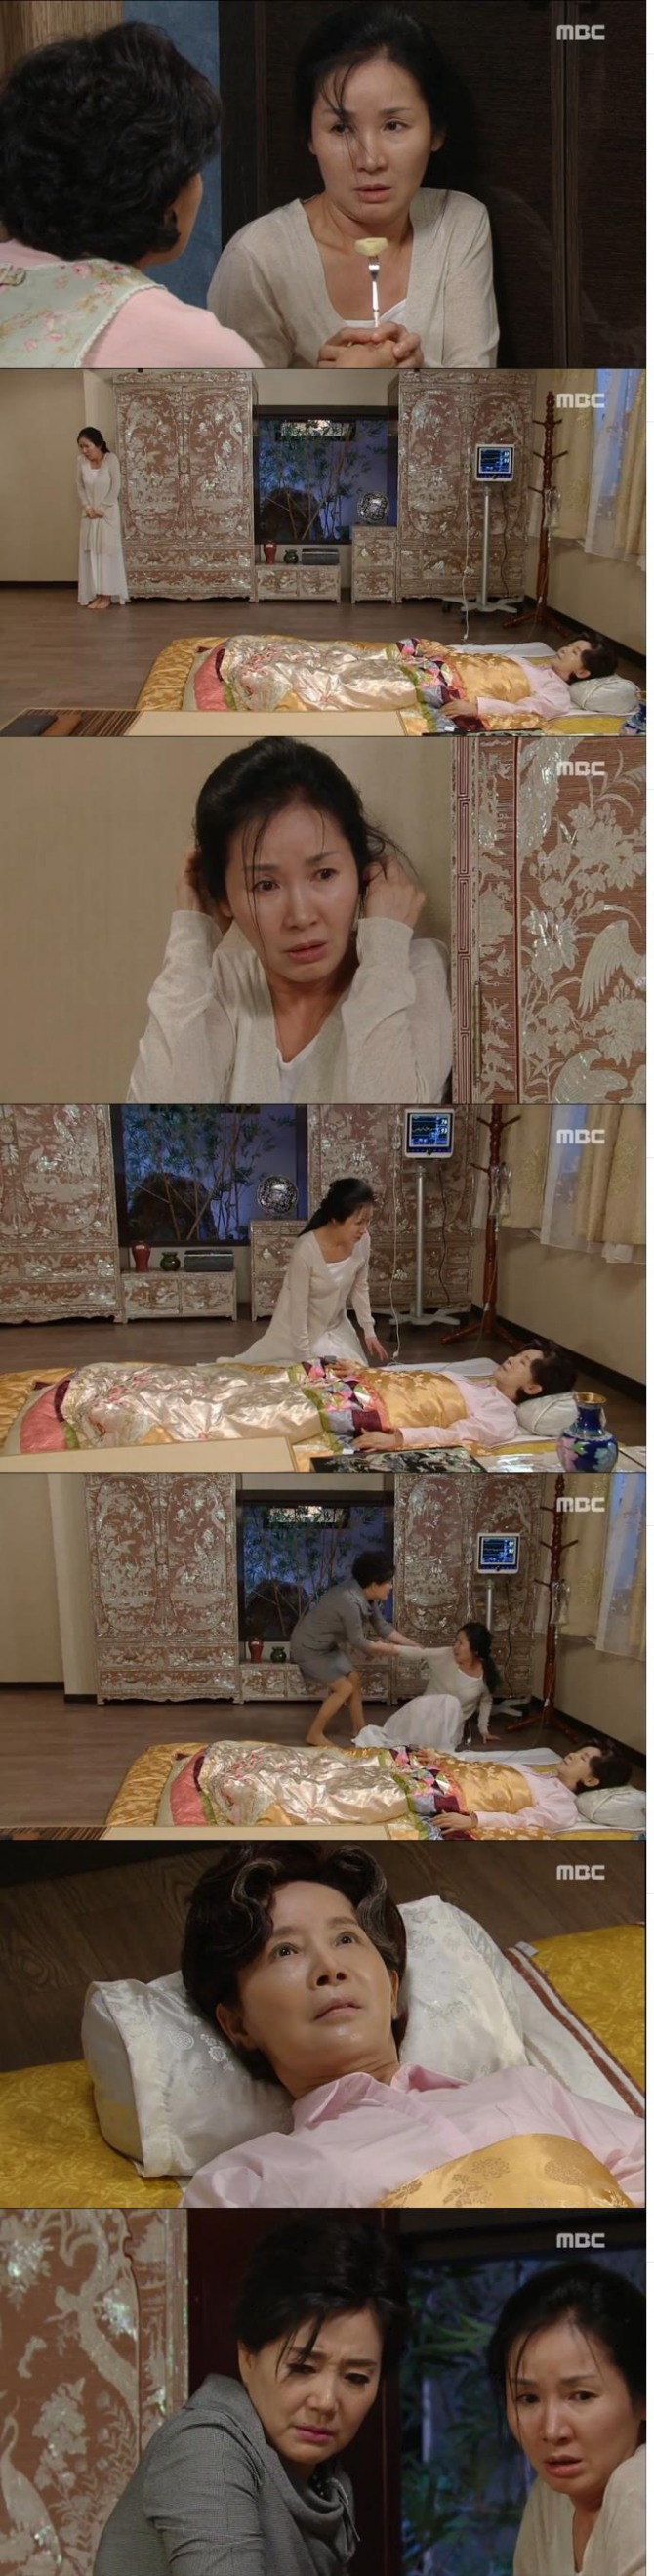 14일 아침 방송된 MBC 일일드라마 '좋은 사람'에서는 차옥심(이효ㅕ춘)이 친딸 김은애(김현주)의 목소리를 듣고 의식을 회복하는 장면이 그려졌다./사진=MBC 방송 캡처